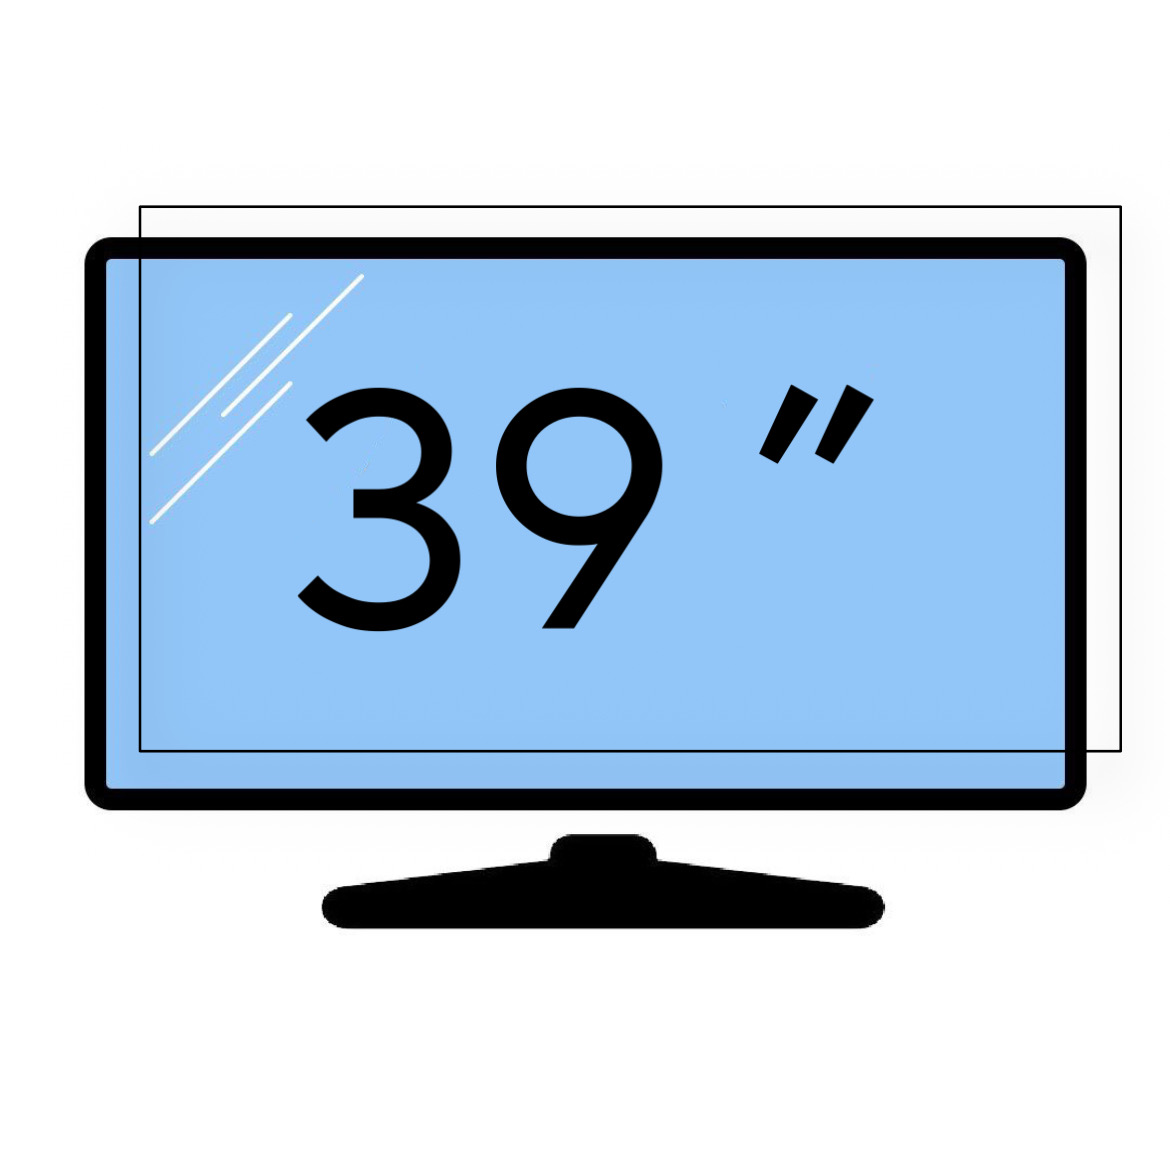 محافظ صفحه تلویزیون 39 اینچ (ابعاد 50*88.5) 2 میل